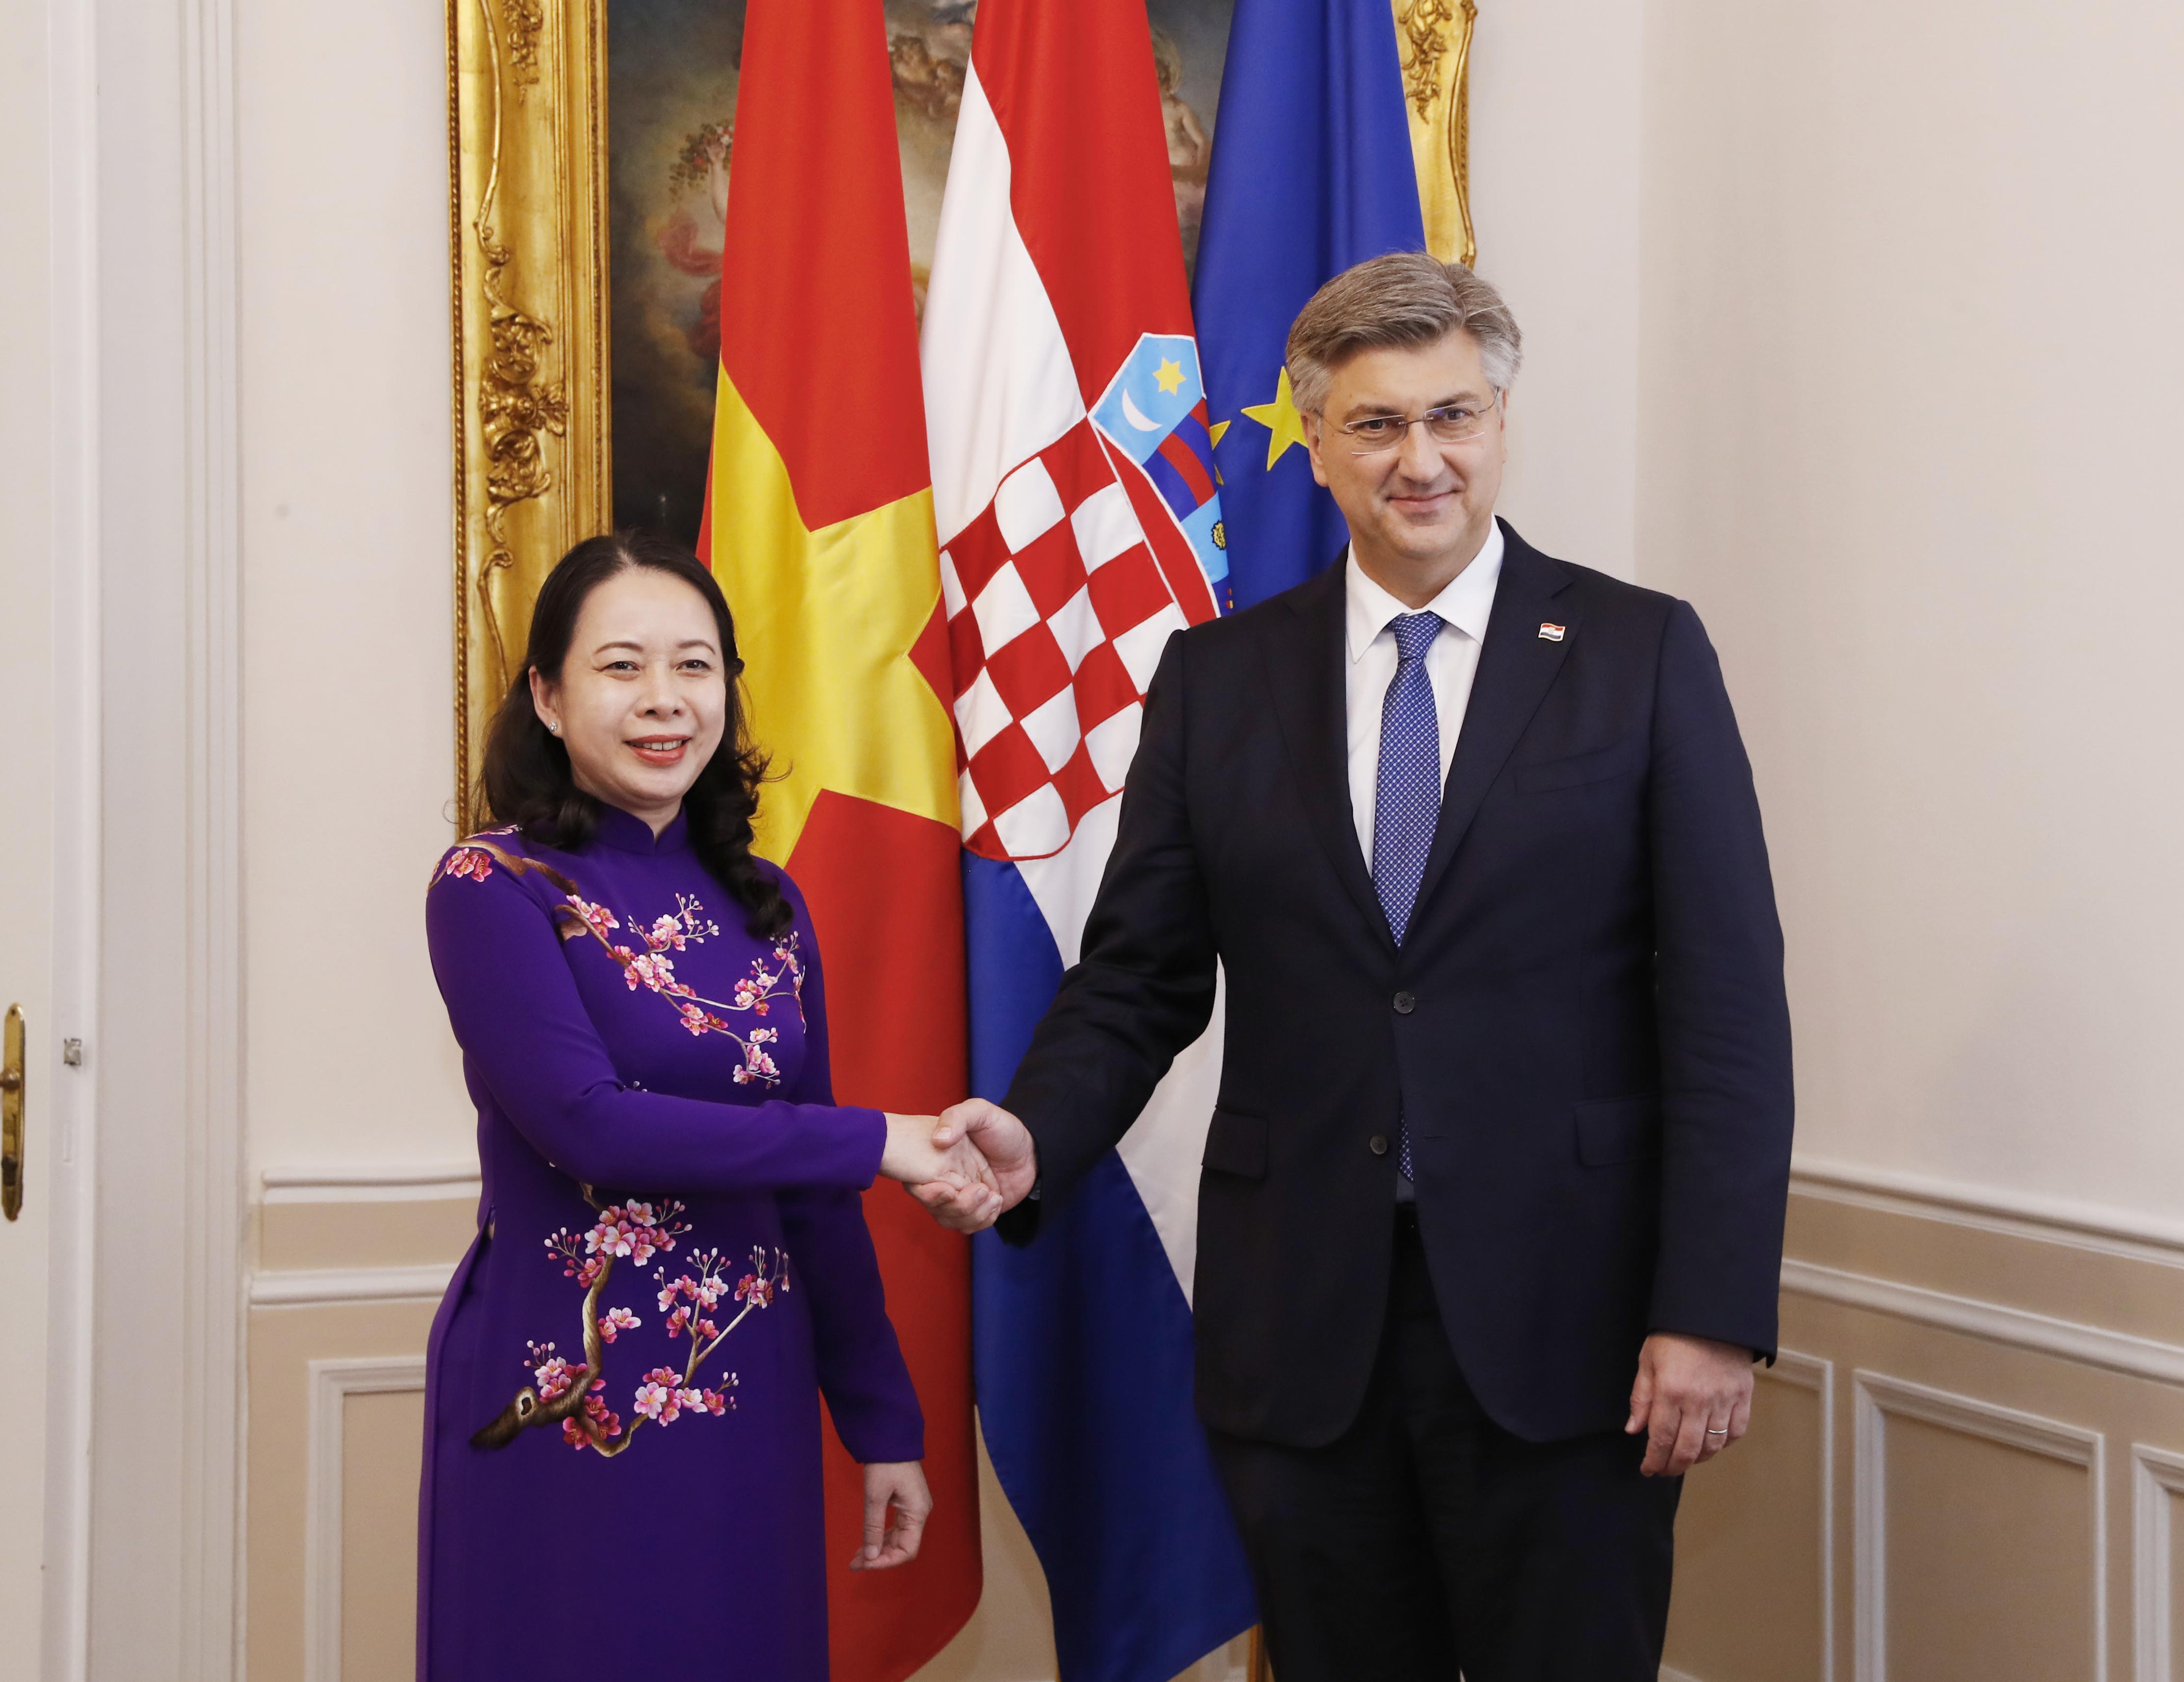 Xúc tiến thương mại Việt Nam - Croatia: Với việc Việt Nam và Croatia đang tăng cường hợp tác kinh tế, cơ hội để mở rộng các thị trường sản phẩm, dịch vụ sẽ được mở ra. Việc xúc tiến thương mại giữa hai quốc gia sẽ mang lại lợi ích to lớn cho cả hai bên. Chắc chắn đây là một sự kiện đáng chú ý mà các nhà doanh nghiệp không thể bỏ qua.